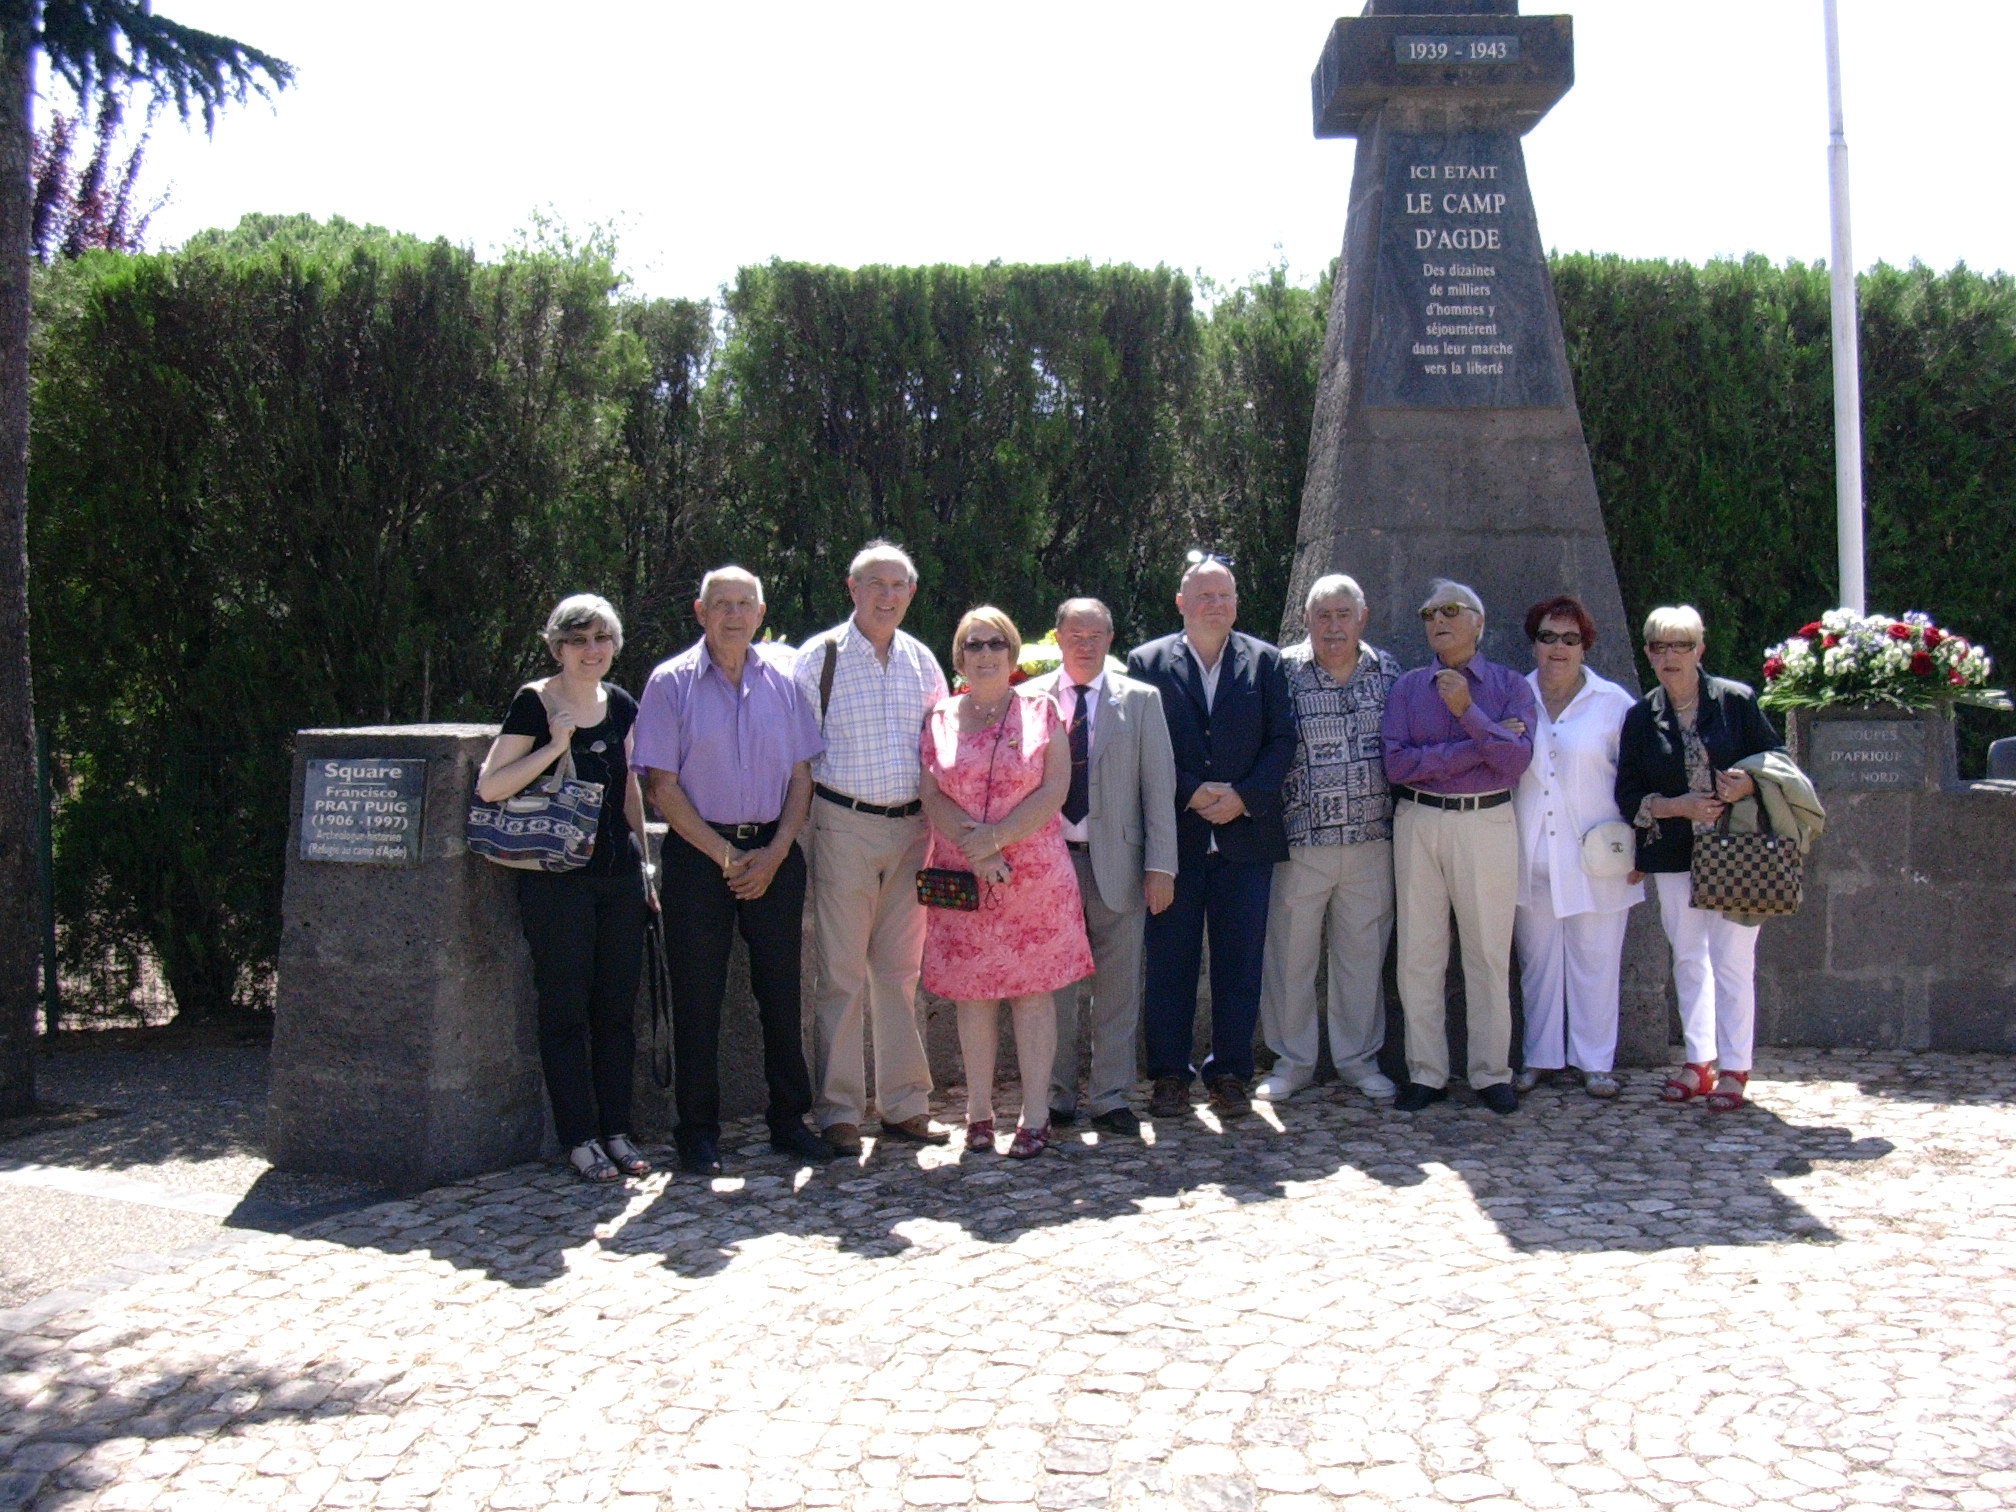 photo des membres de l'association devant le monument à l'effigie du camp